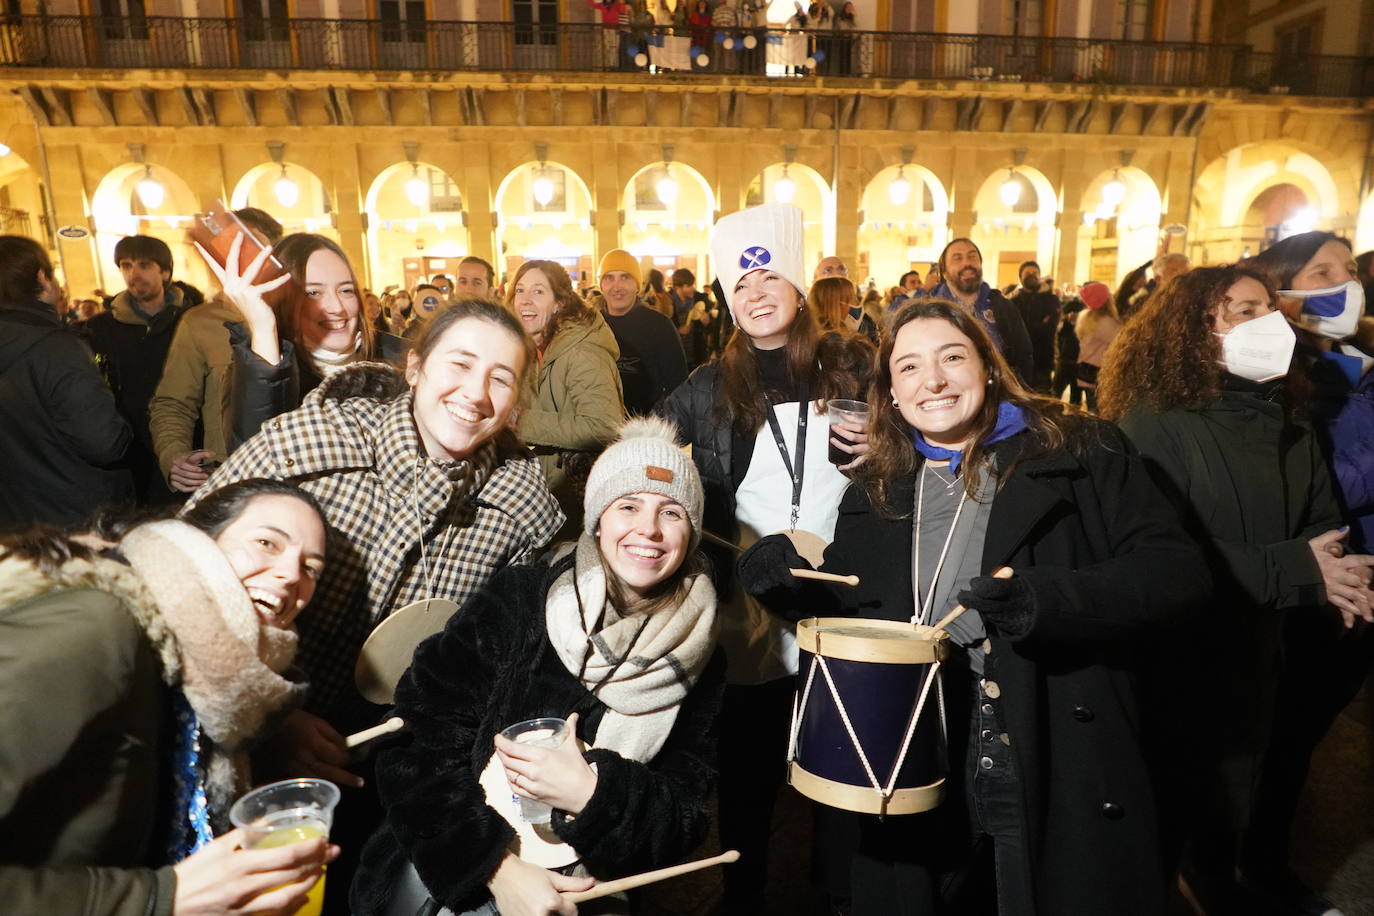 Fotos: La fiesta de San Sebastián se abre paso entre restricciones